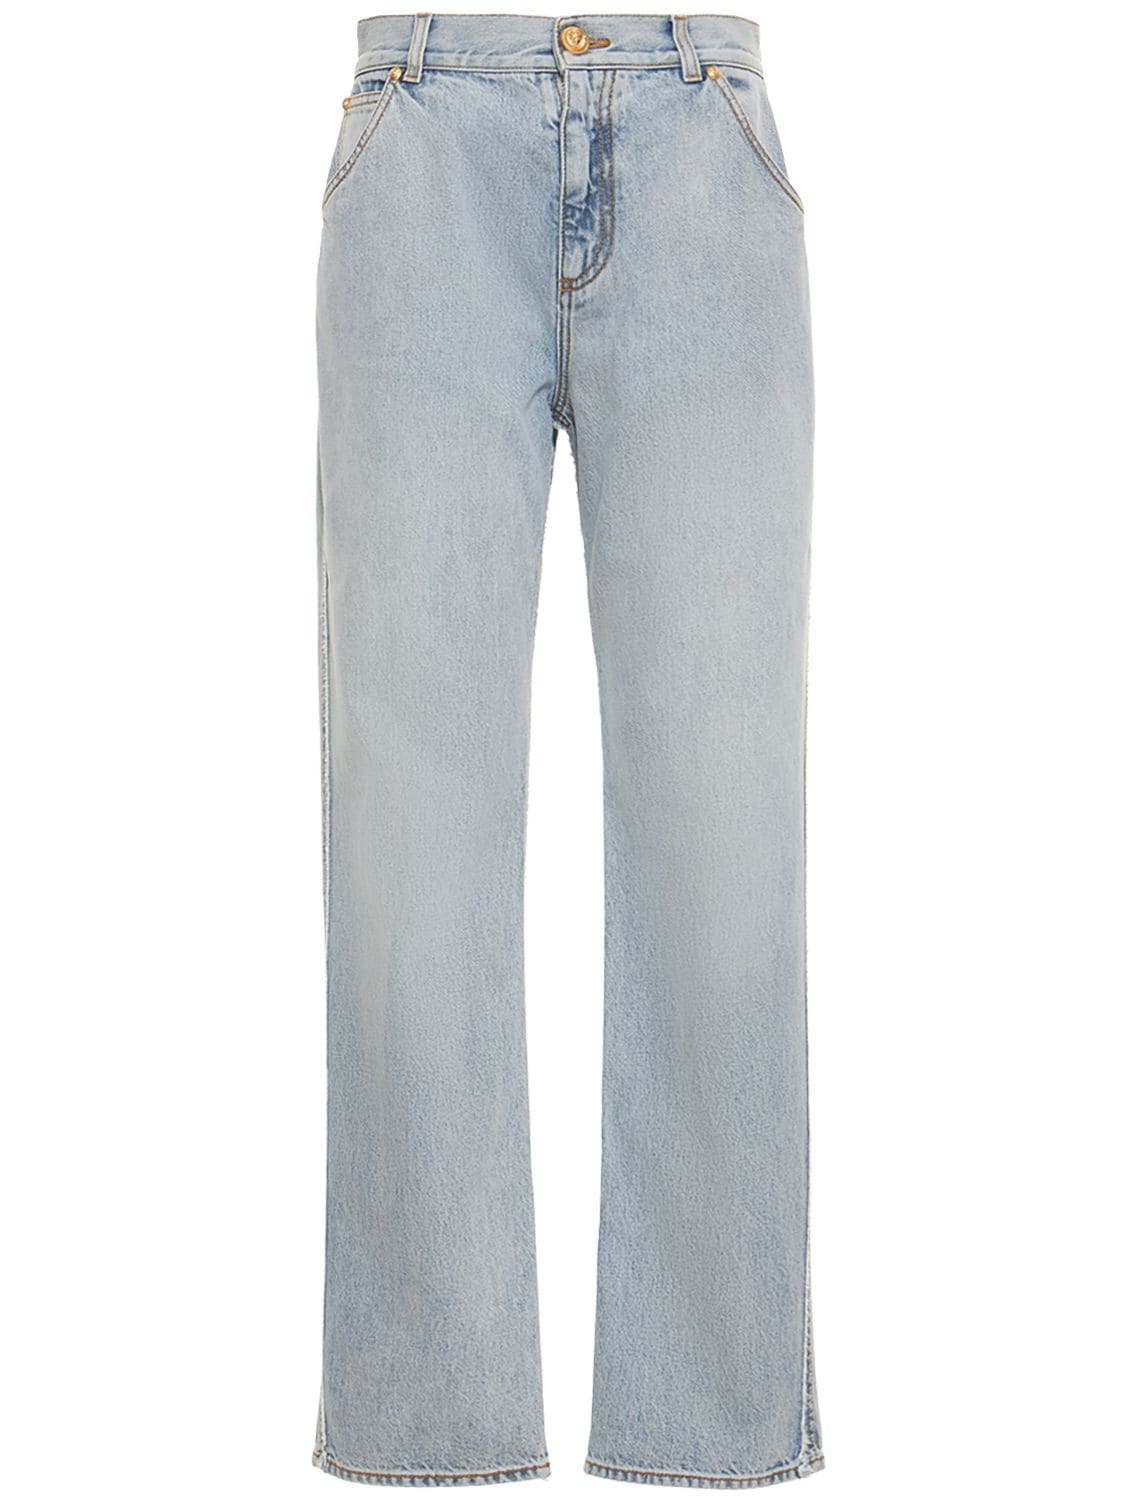 BALMAIN Vintage Straight Slim Jeans for Women